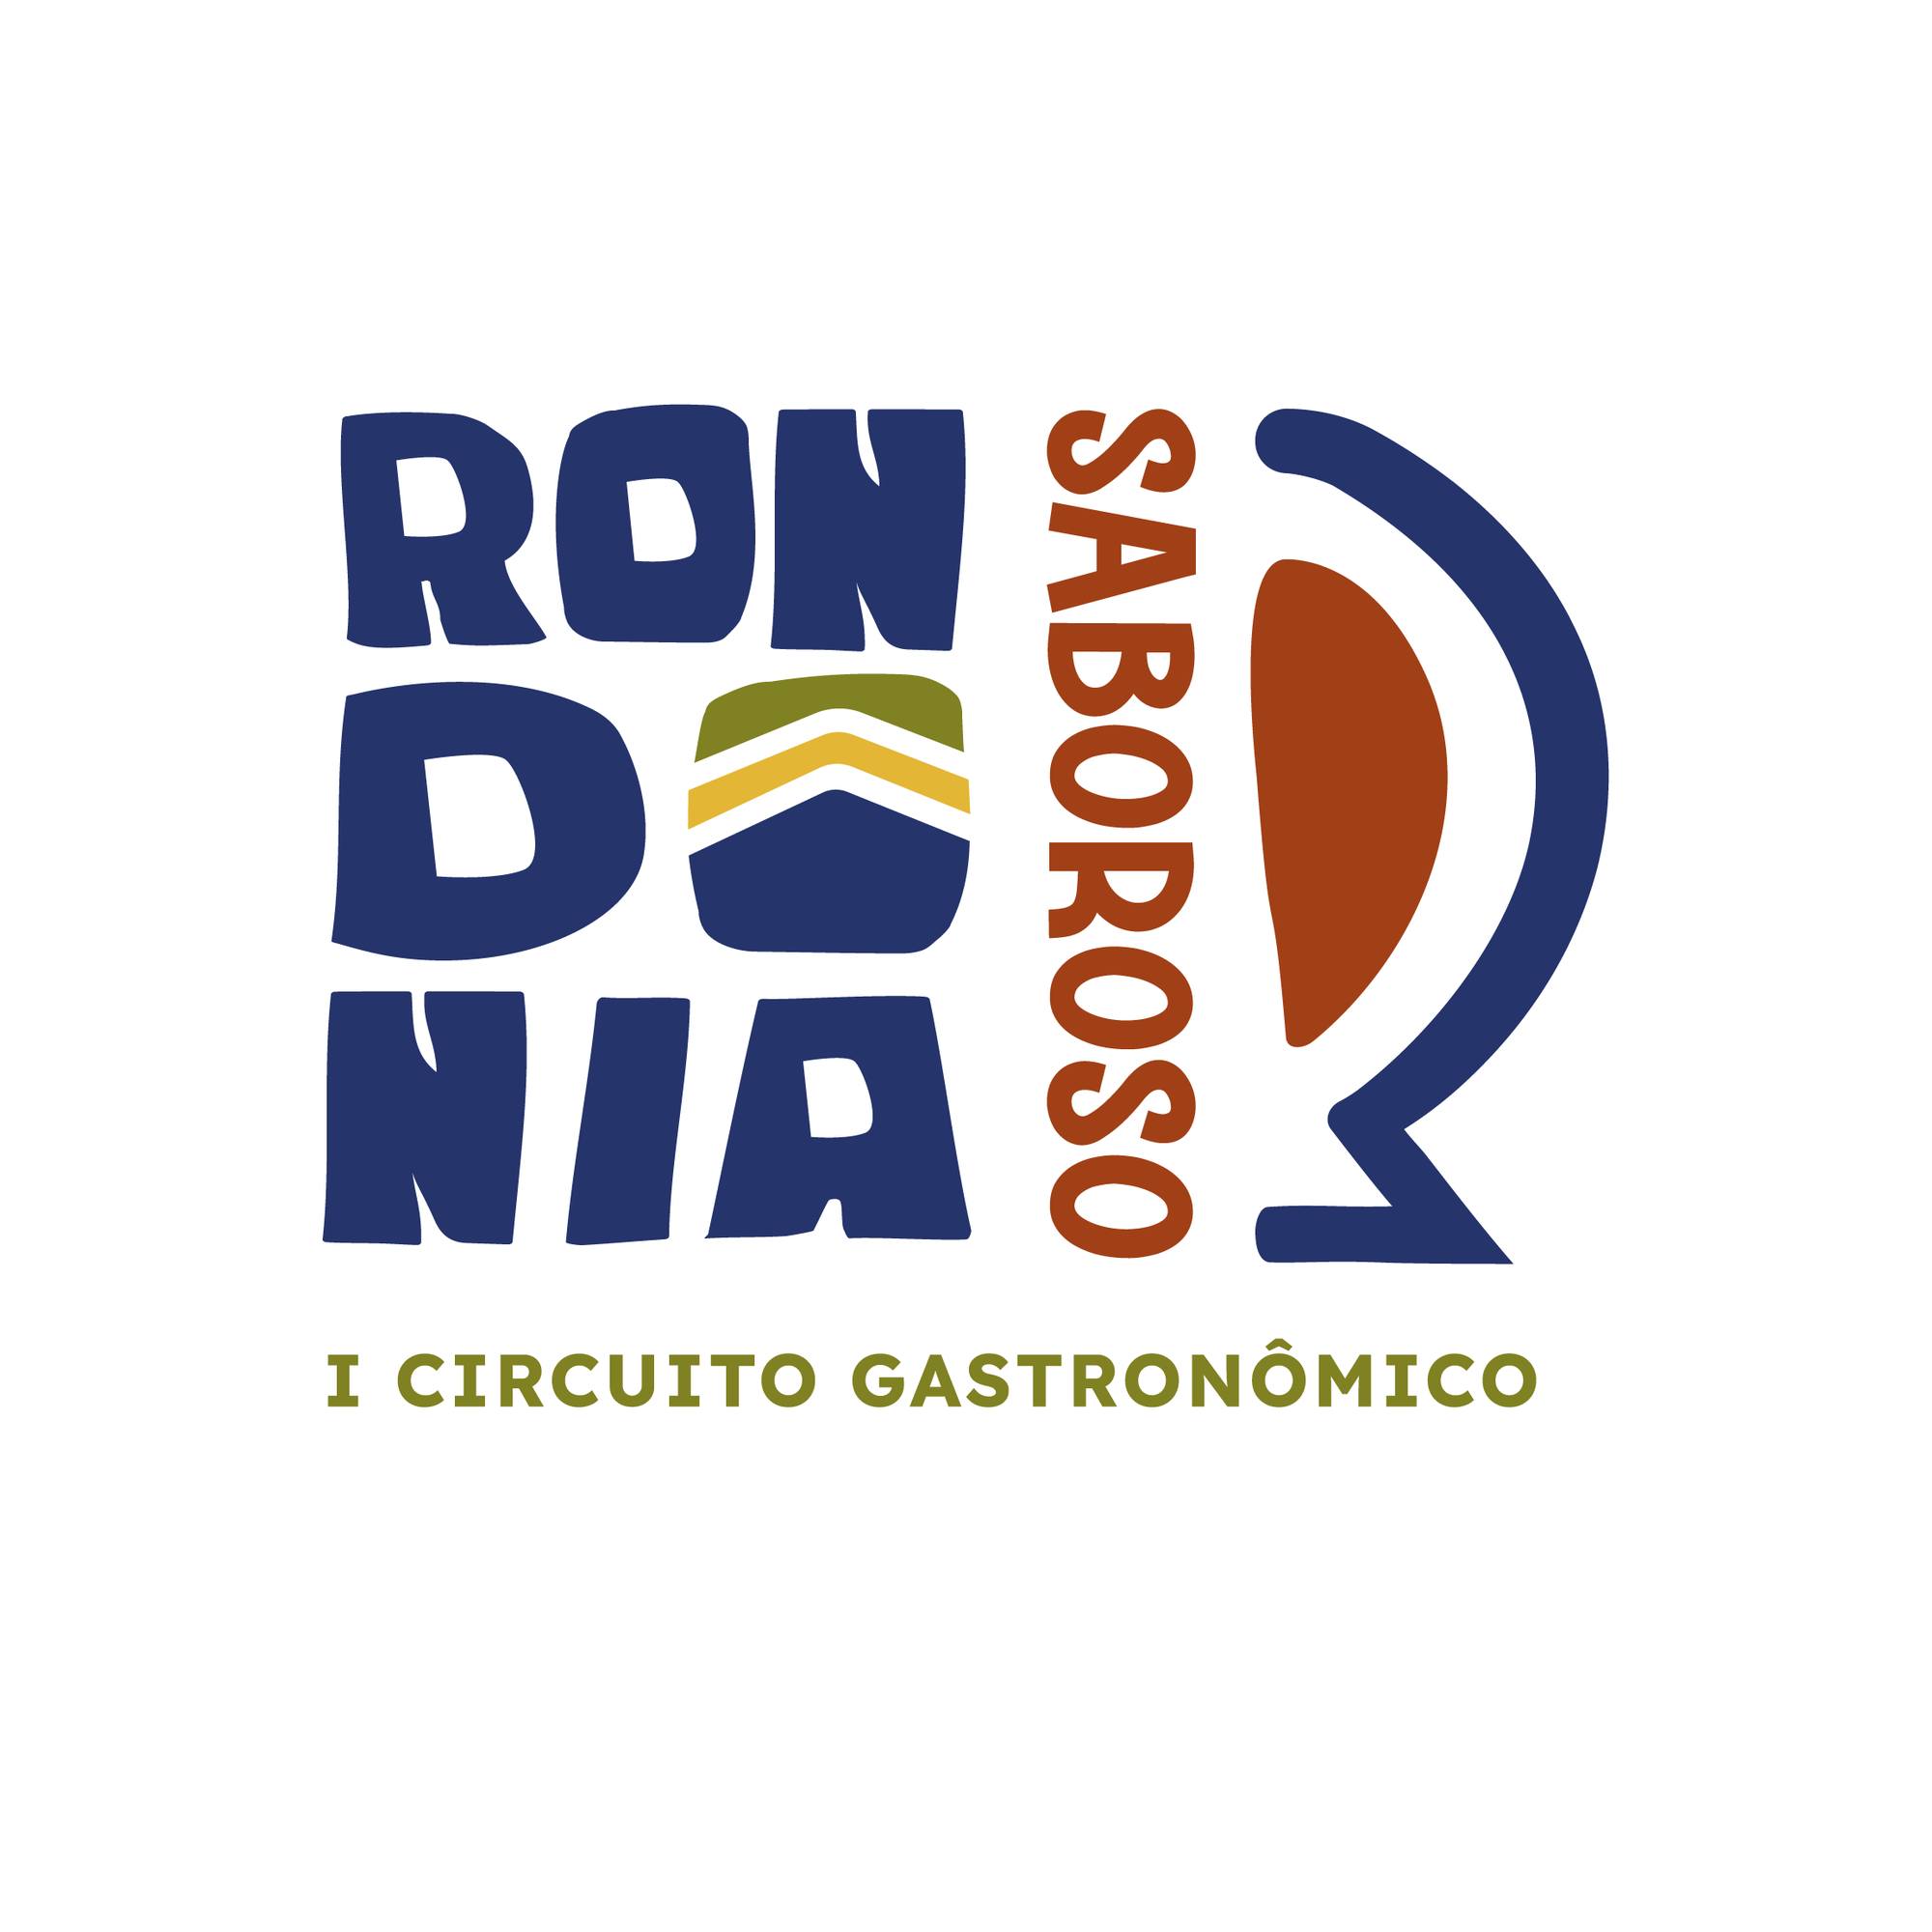 Rondônia Sabores - I circuito gastronômico